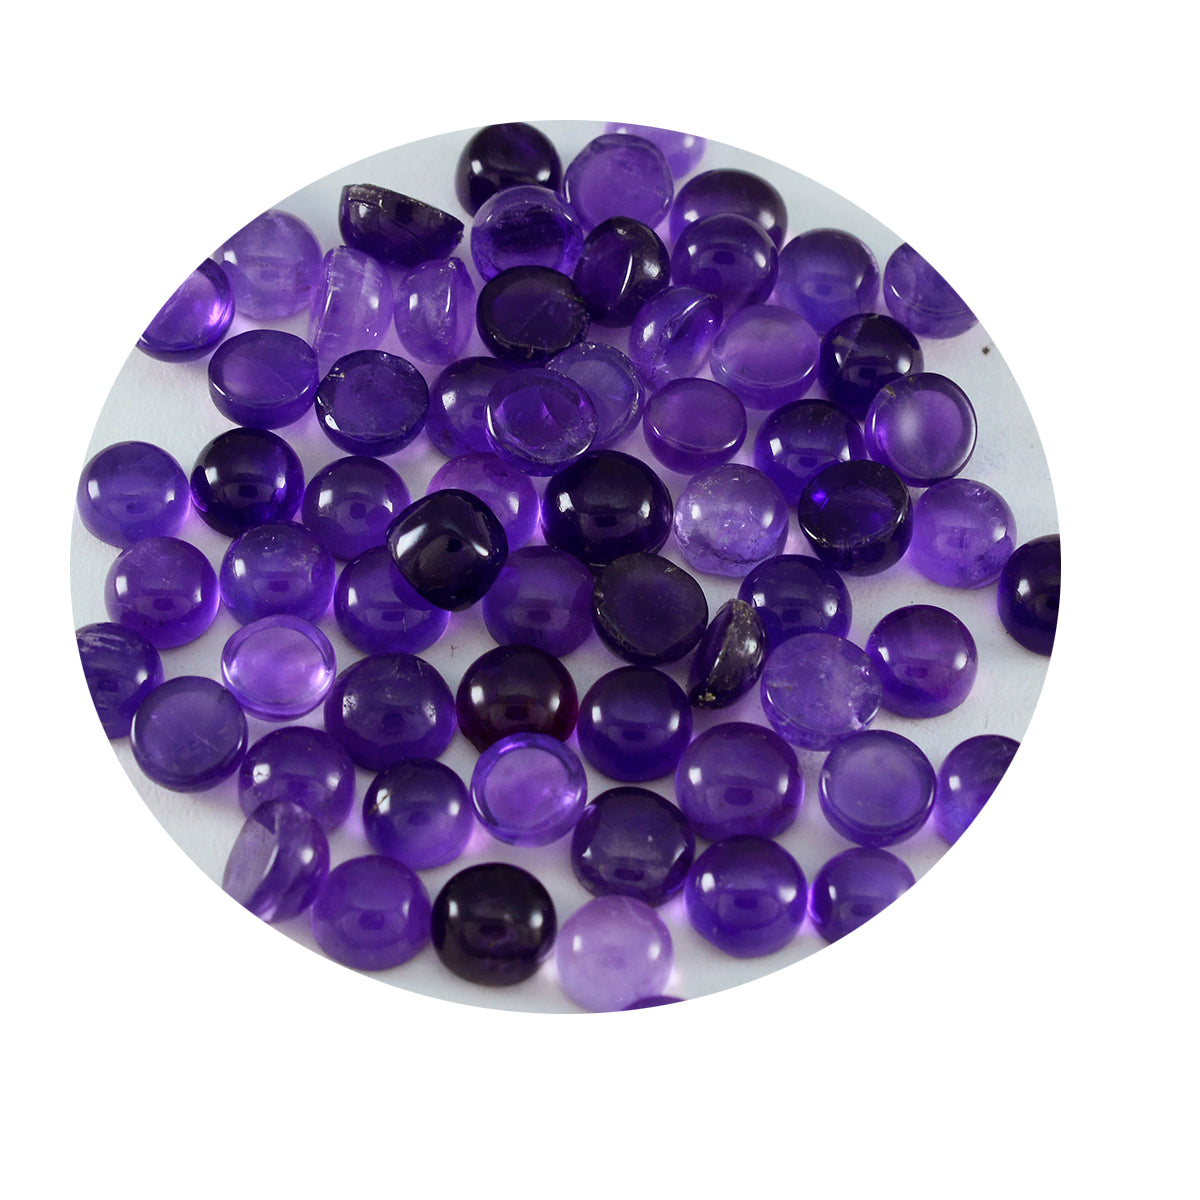 Riyogems 1 pc cabochon d'améthyste violette 4x4 mm forme ronde superbe qualité gemme en vrac